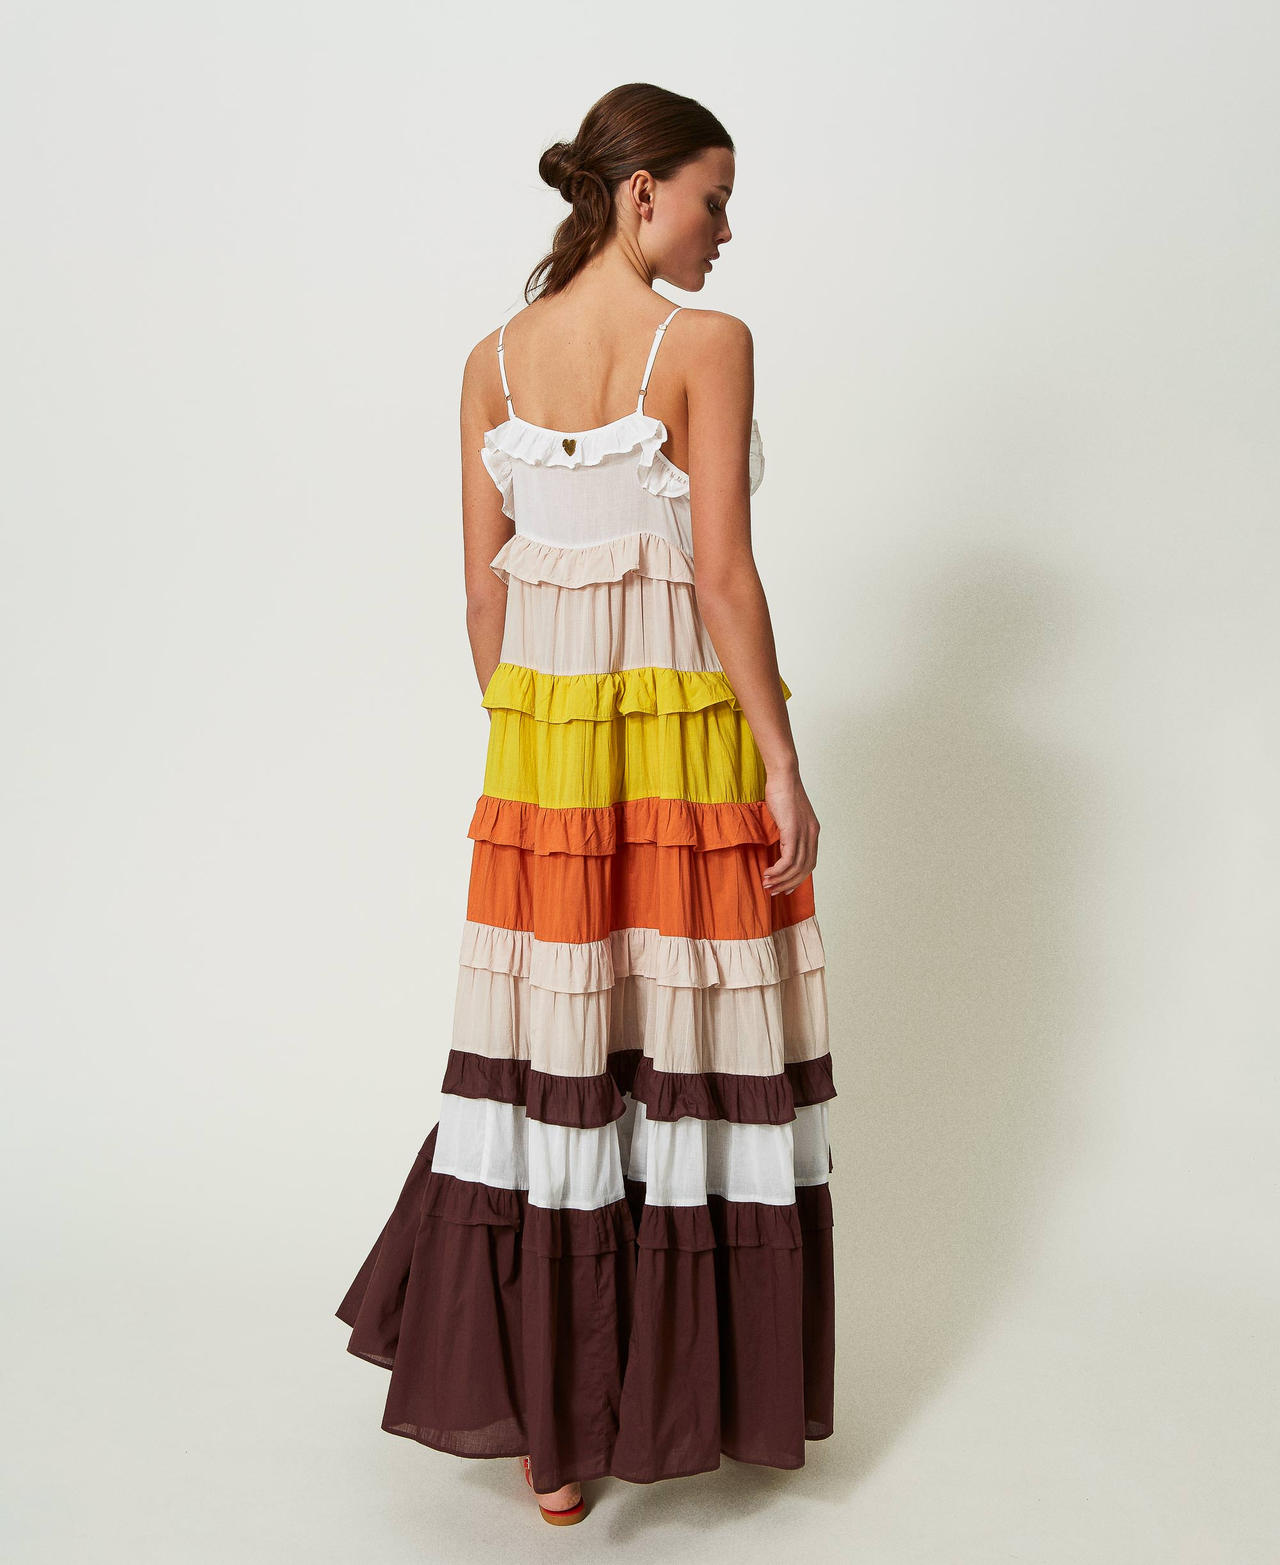 Robe longue en mousseline color block Multicolore Star White/Beige « Shell »/Orange/Marron « Chocolate » Femme 241LM2RBB-03